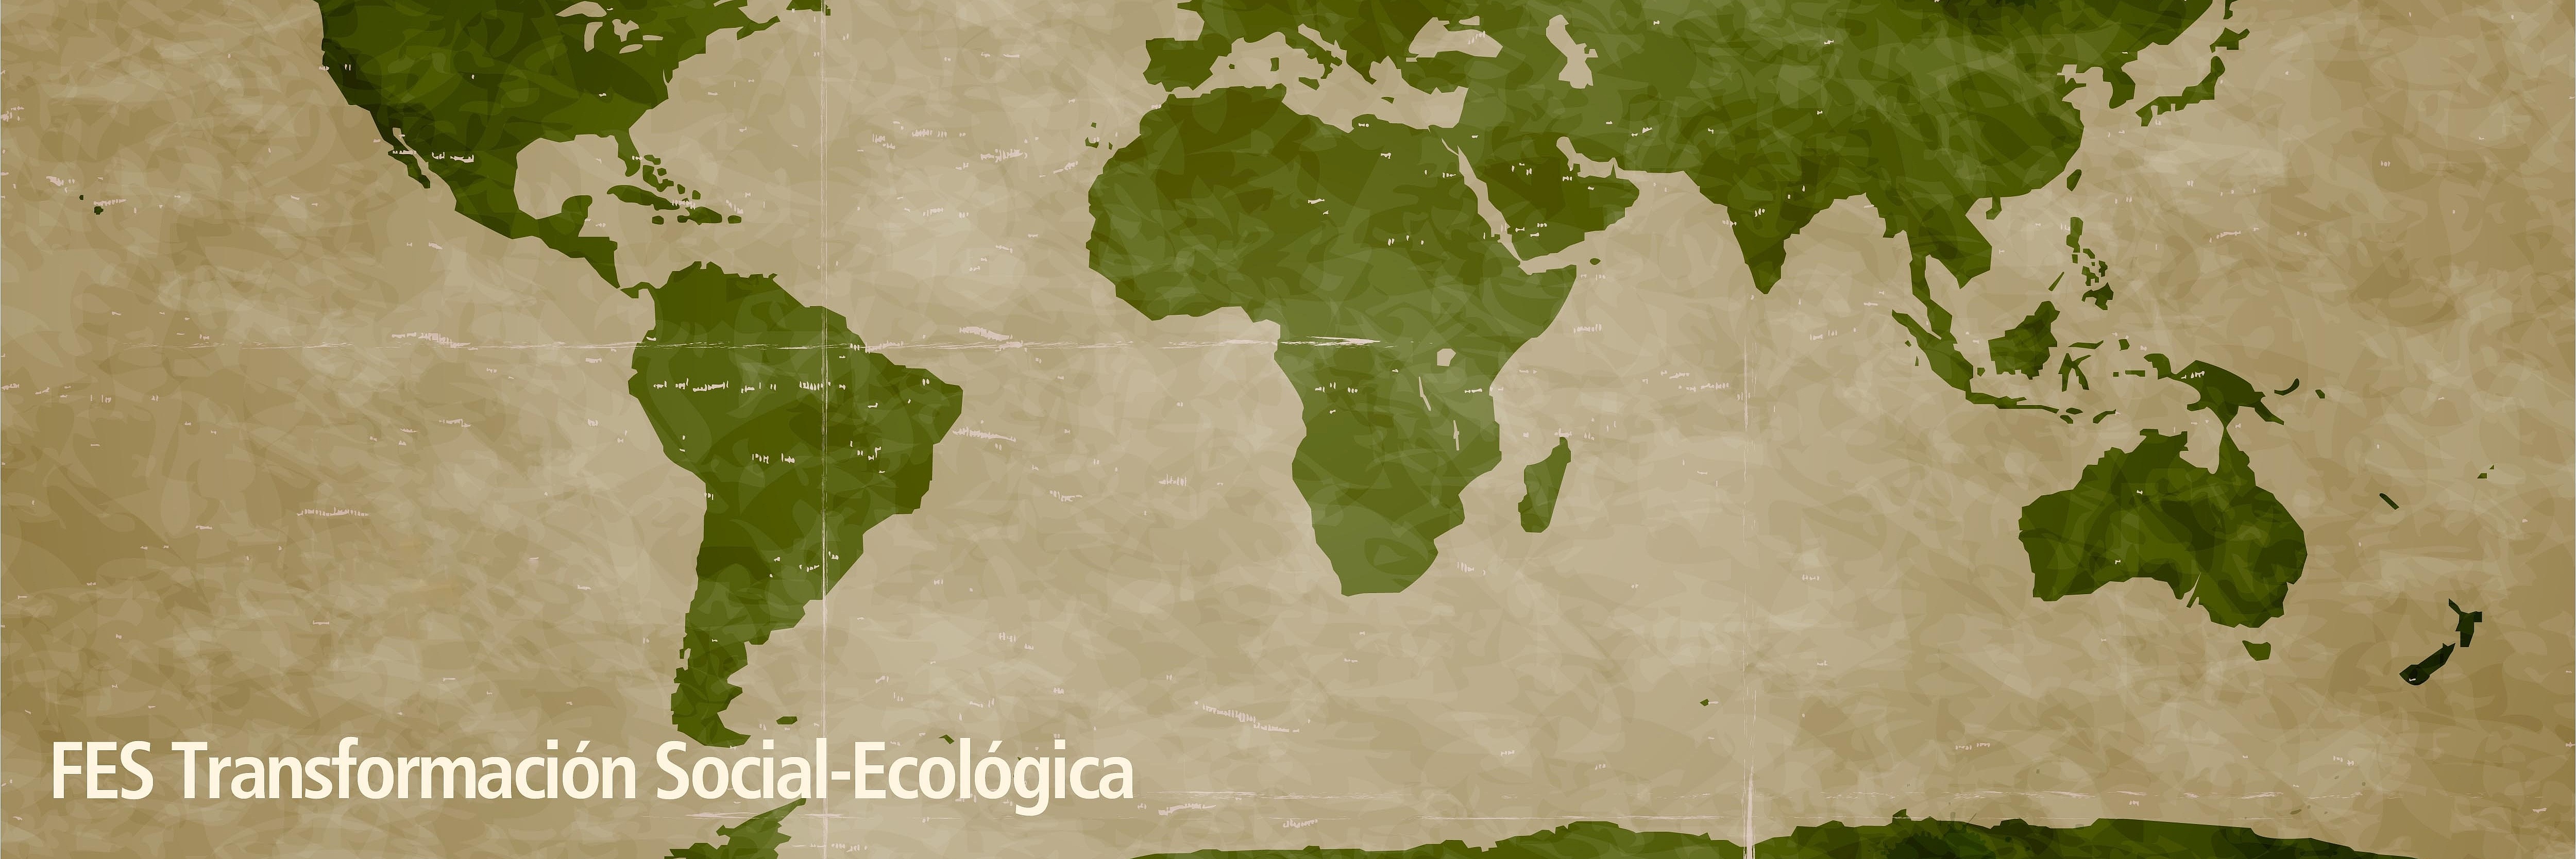 Landkarte FES Transformación Social-Ecológica